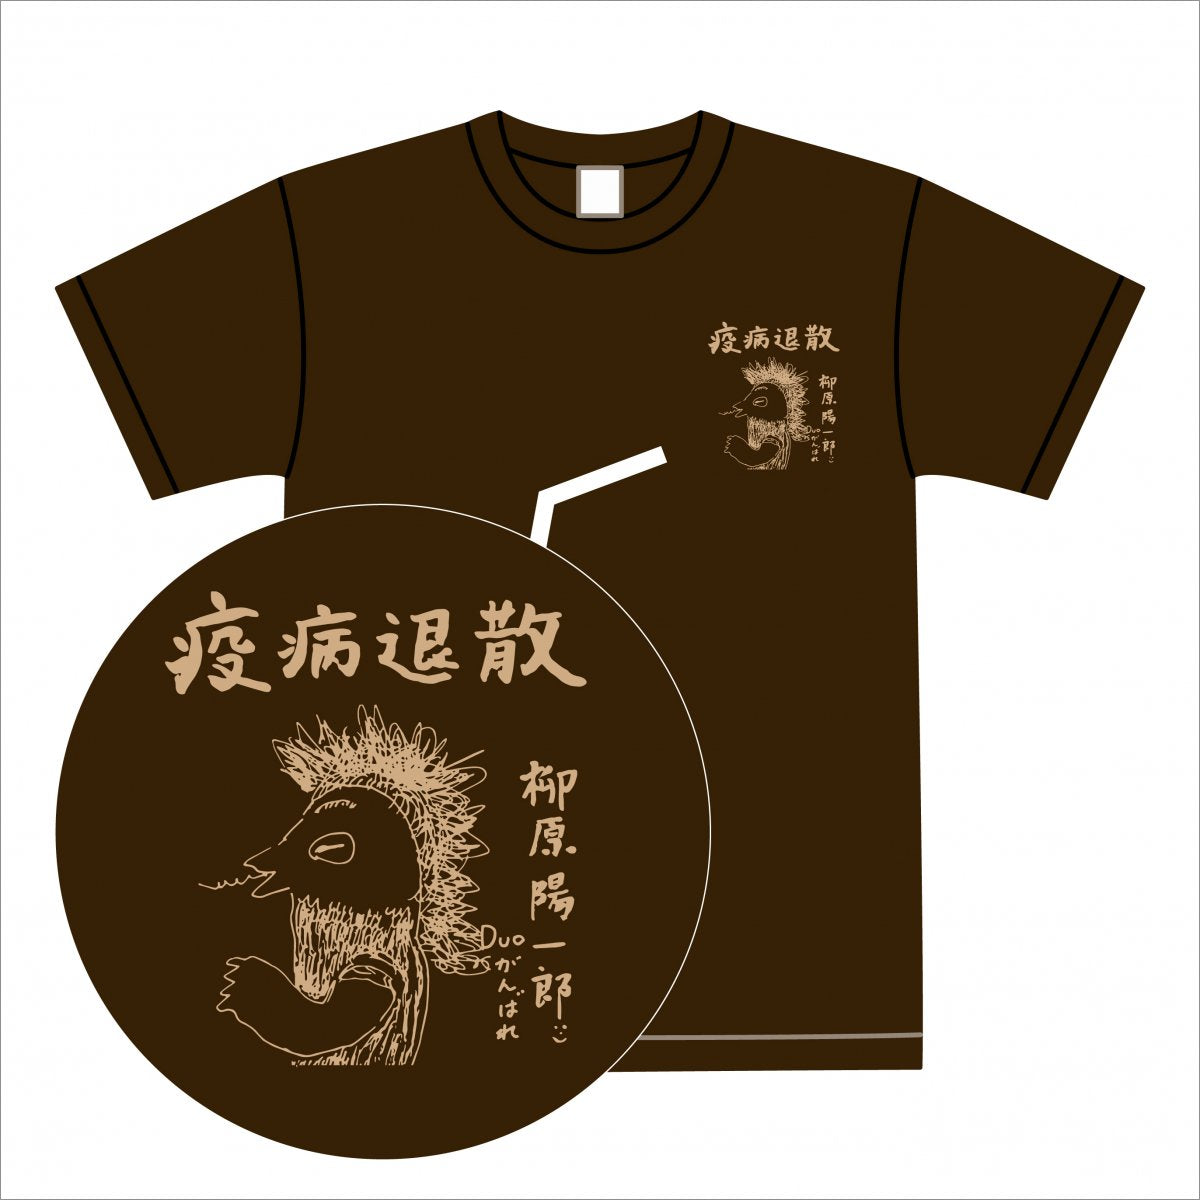 「柳原陽一郎 と duo MUSC EXCHANGE」Tシャツ